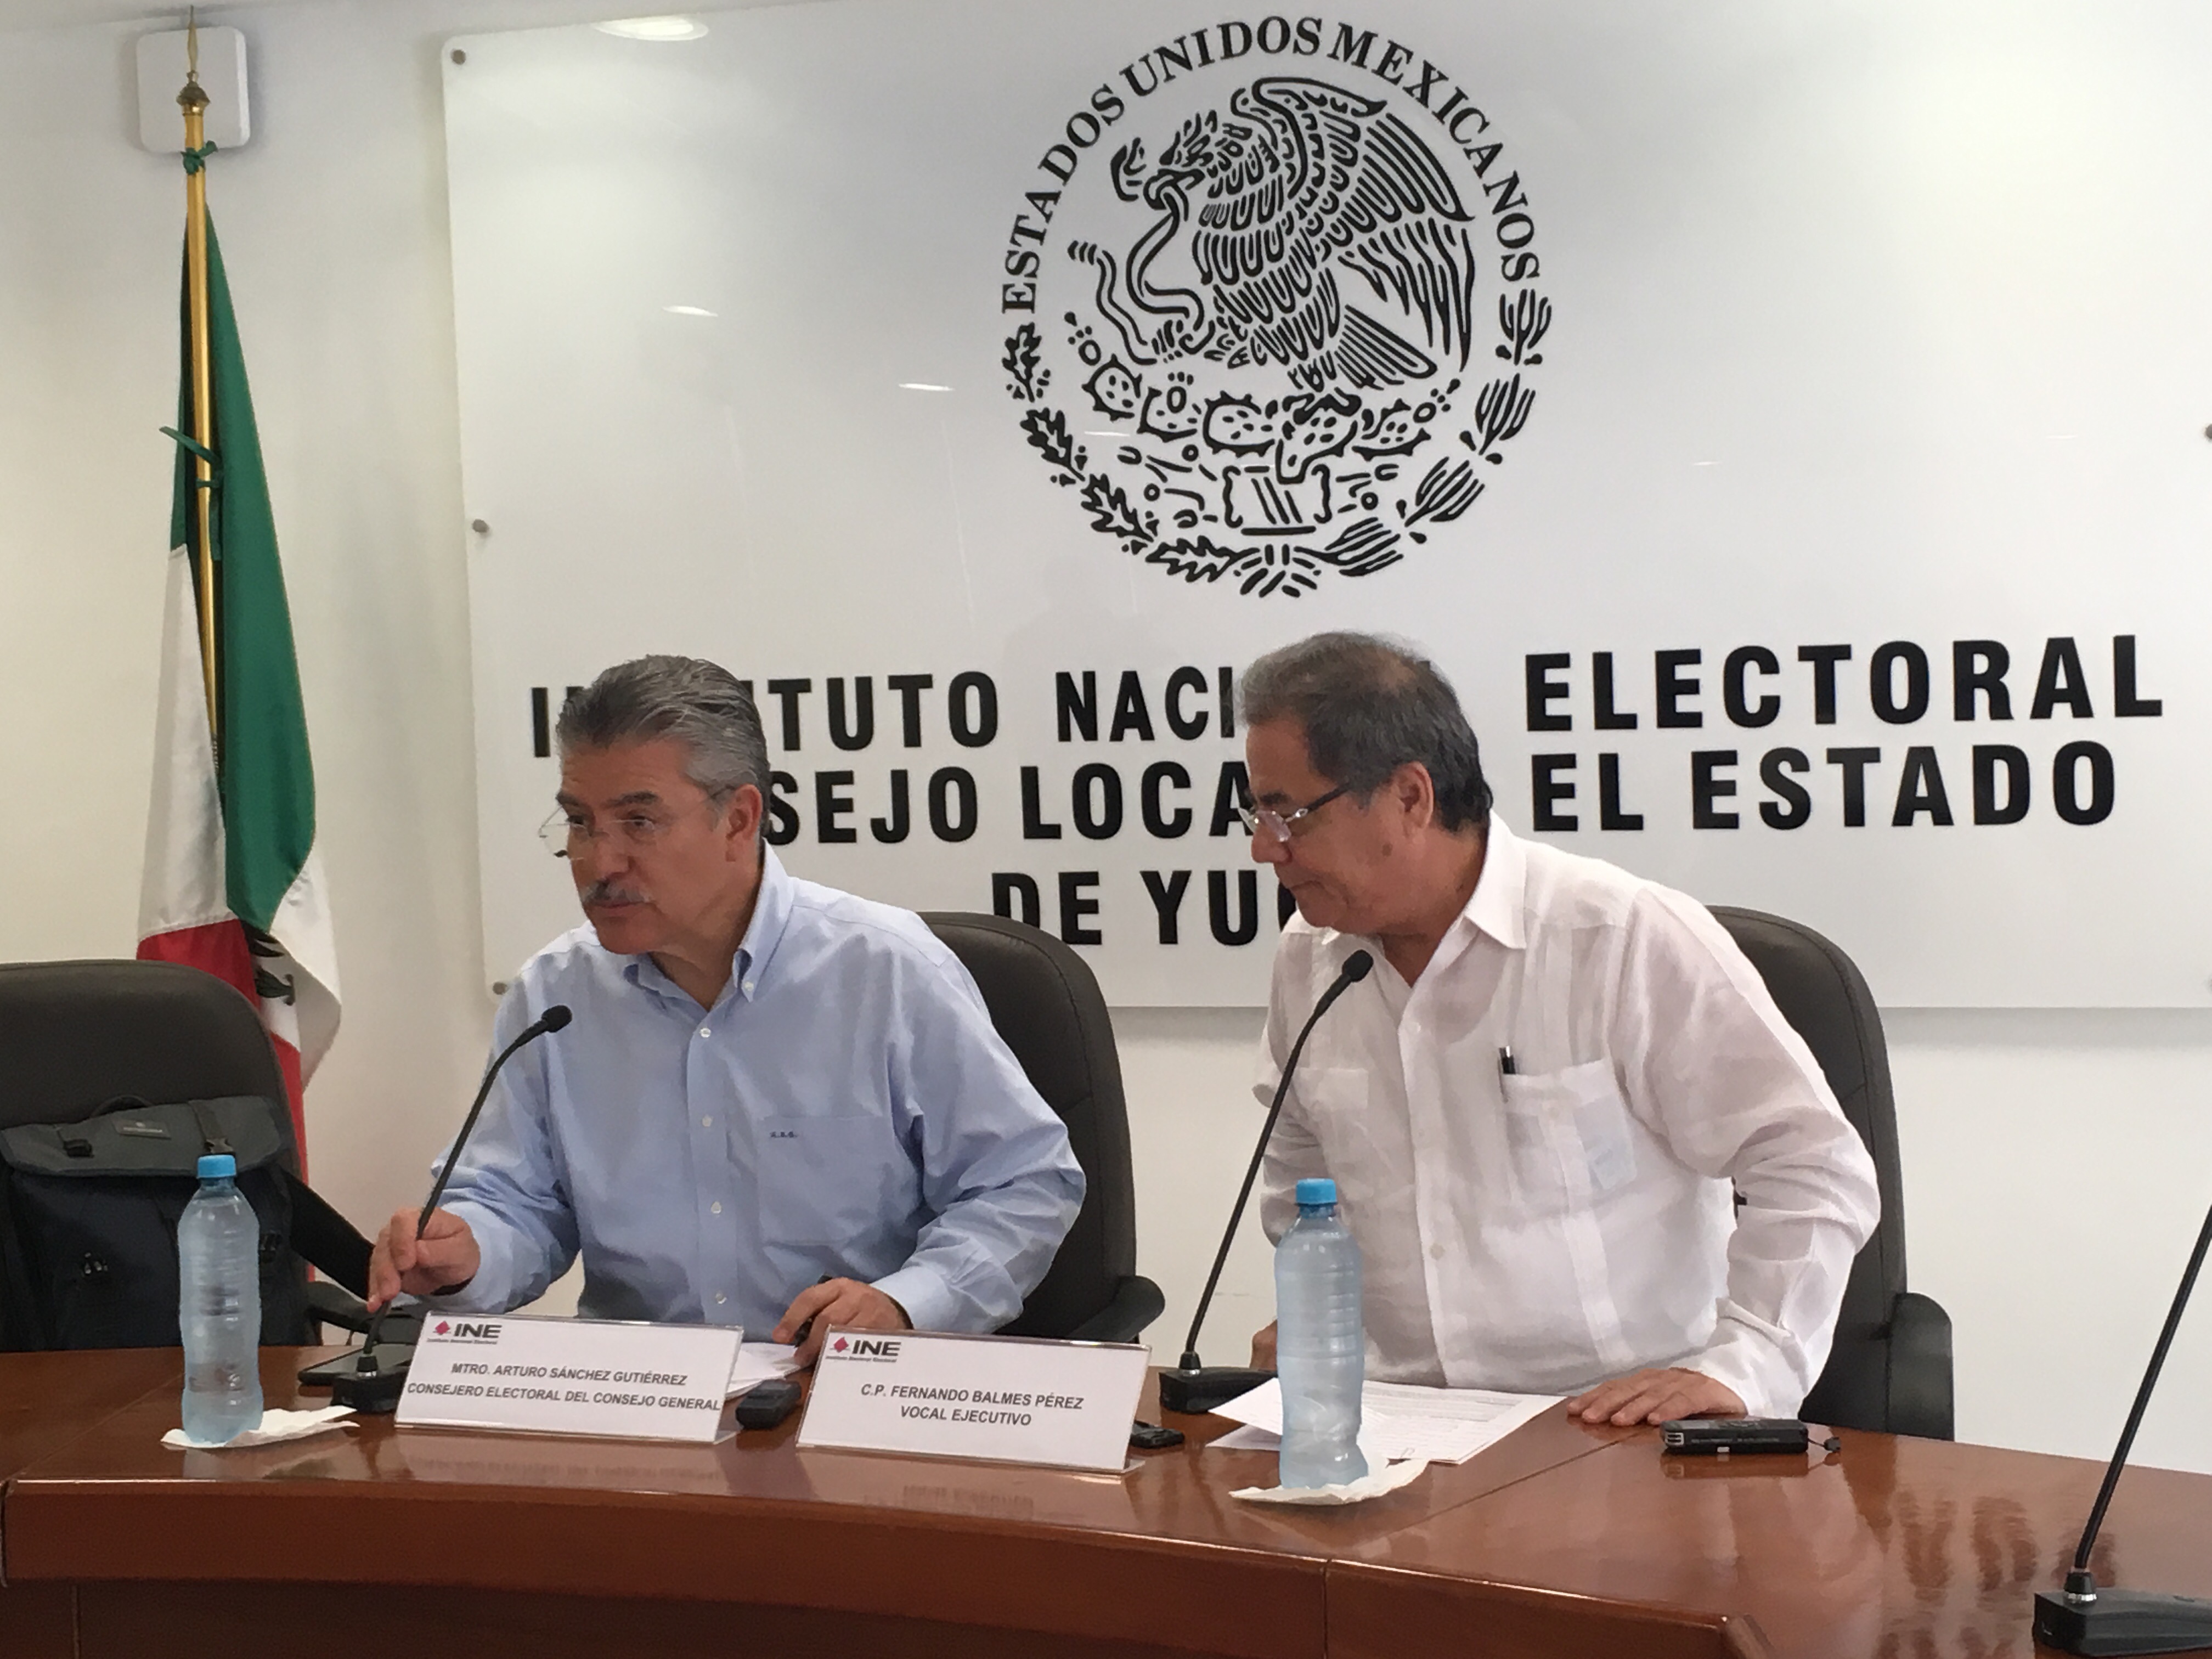 Proceso electoral mexicano en doble pista﻿